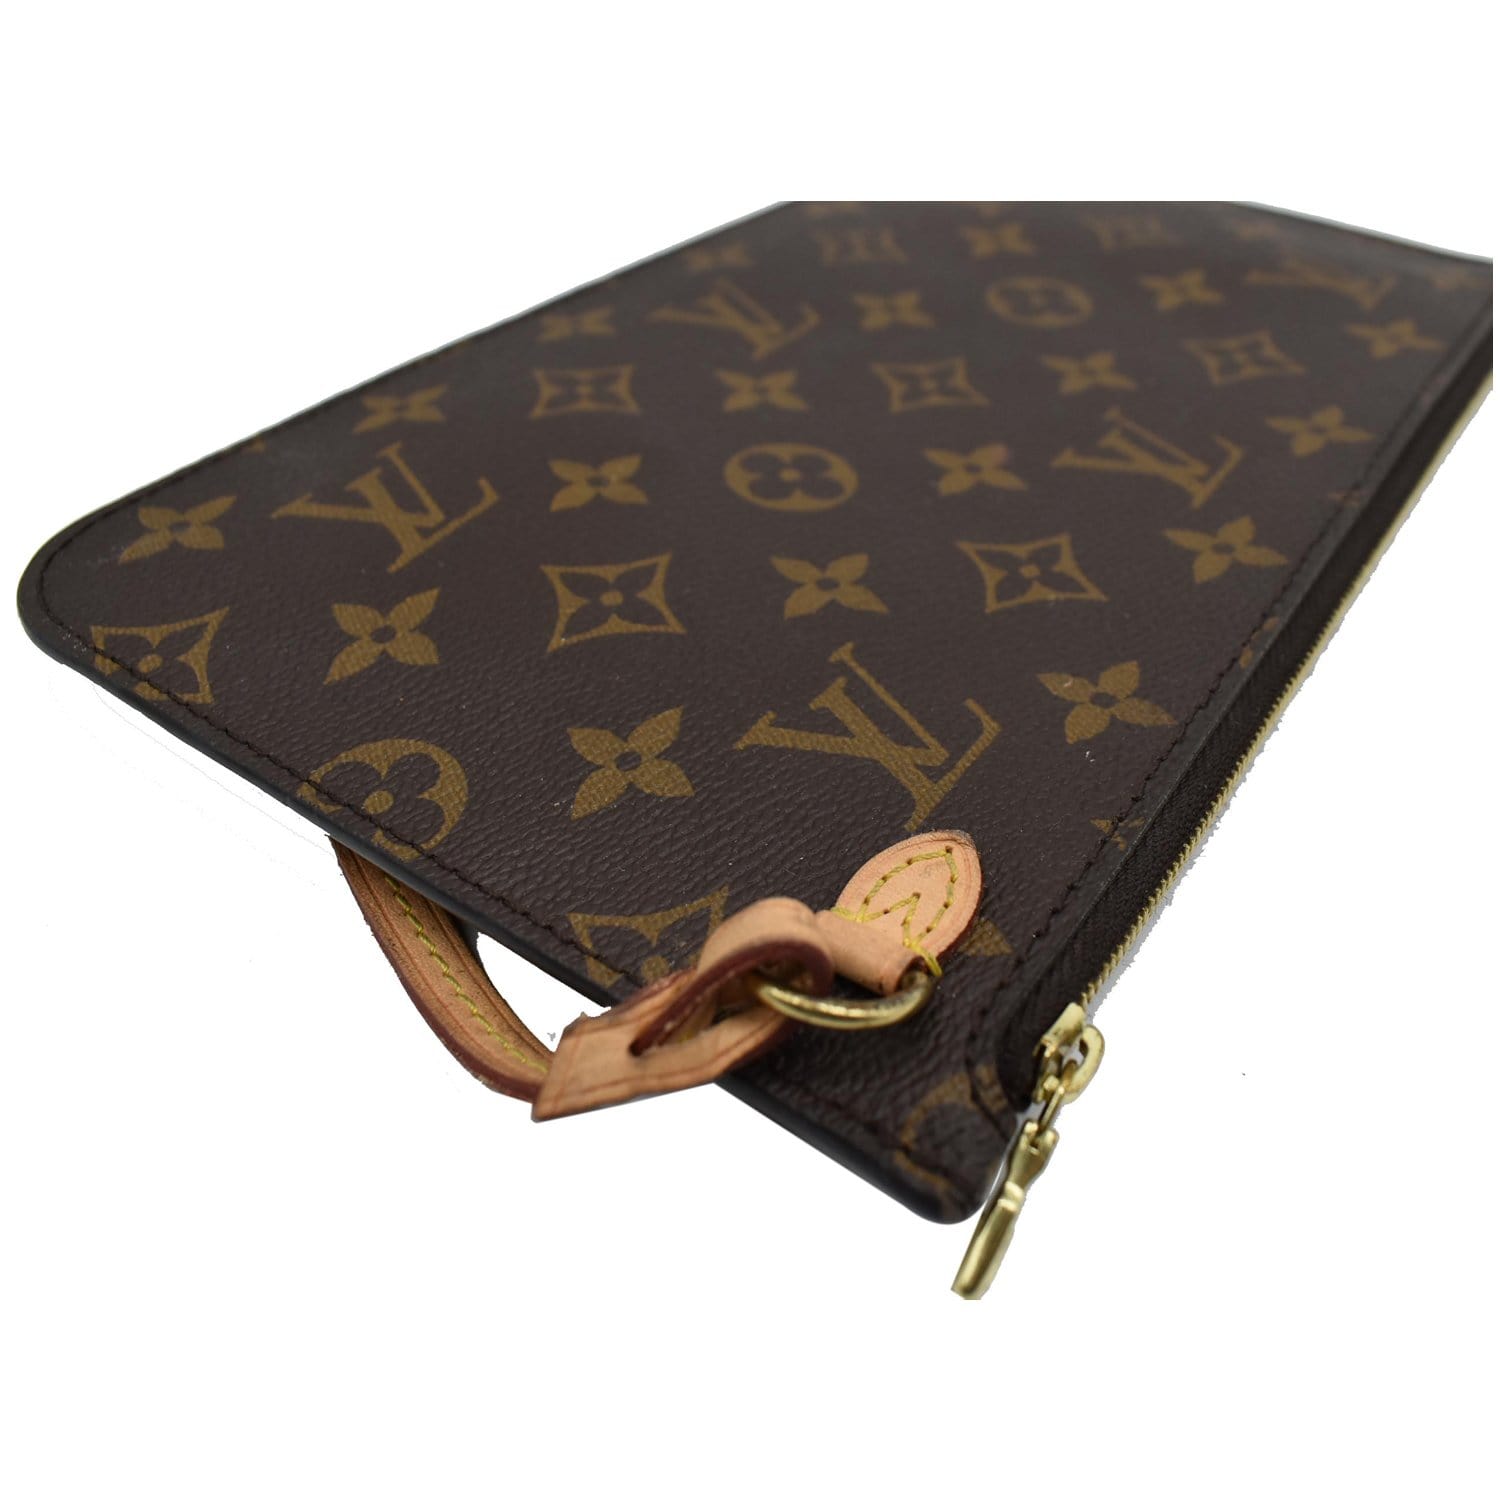 024 Pre-Owned Authentic Louis Vuitton Monogram Cloth Purse Wallet